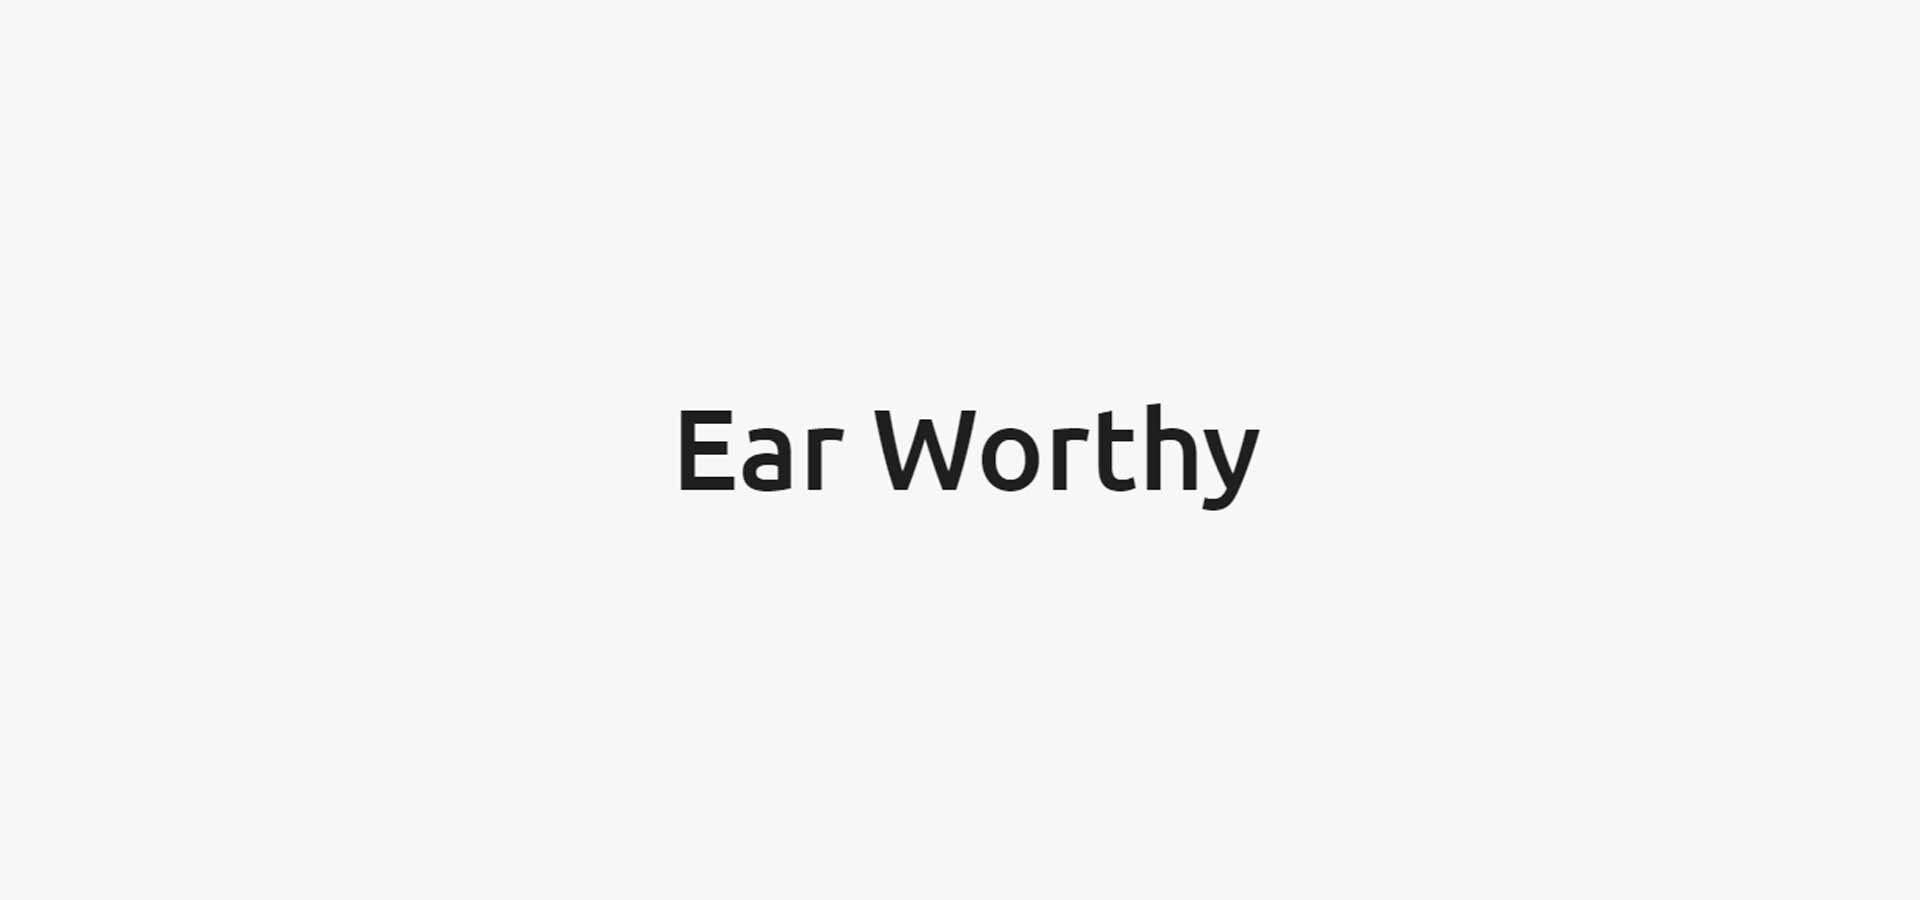 Ear Worthy logo